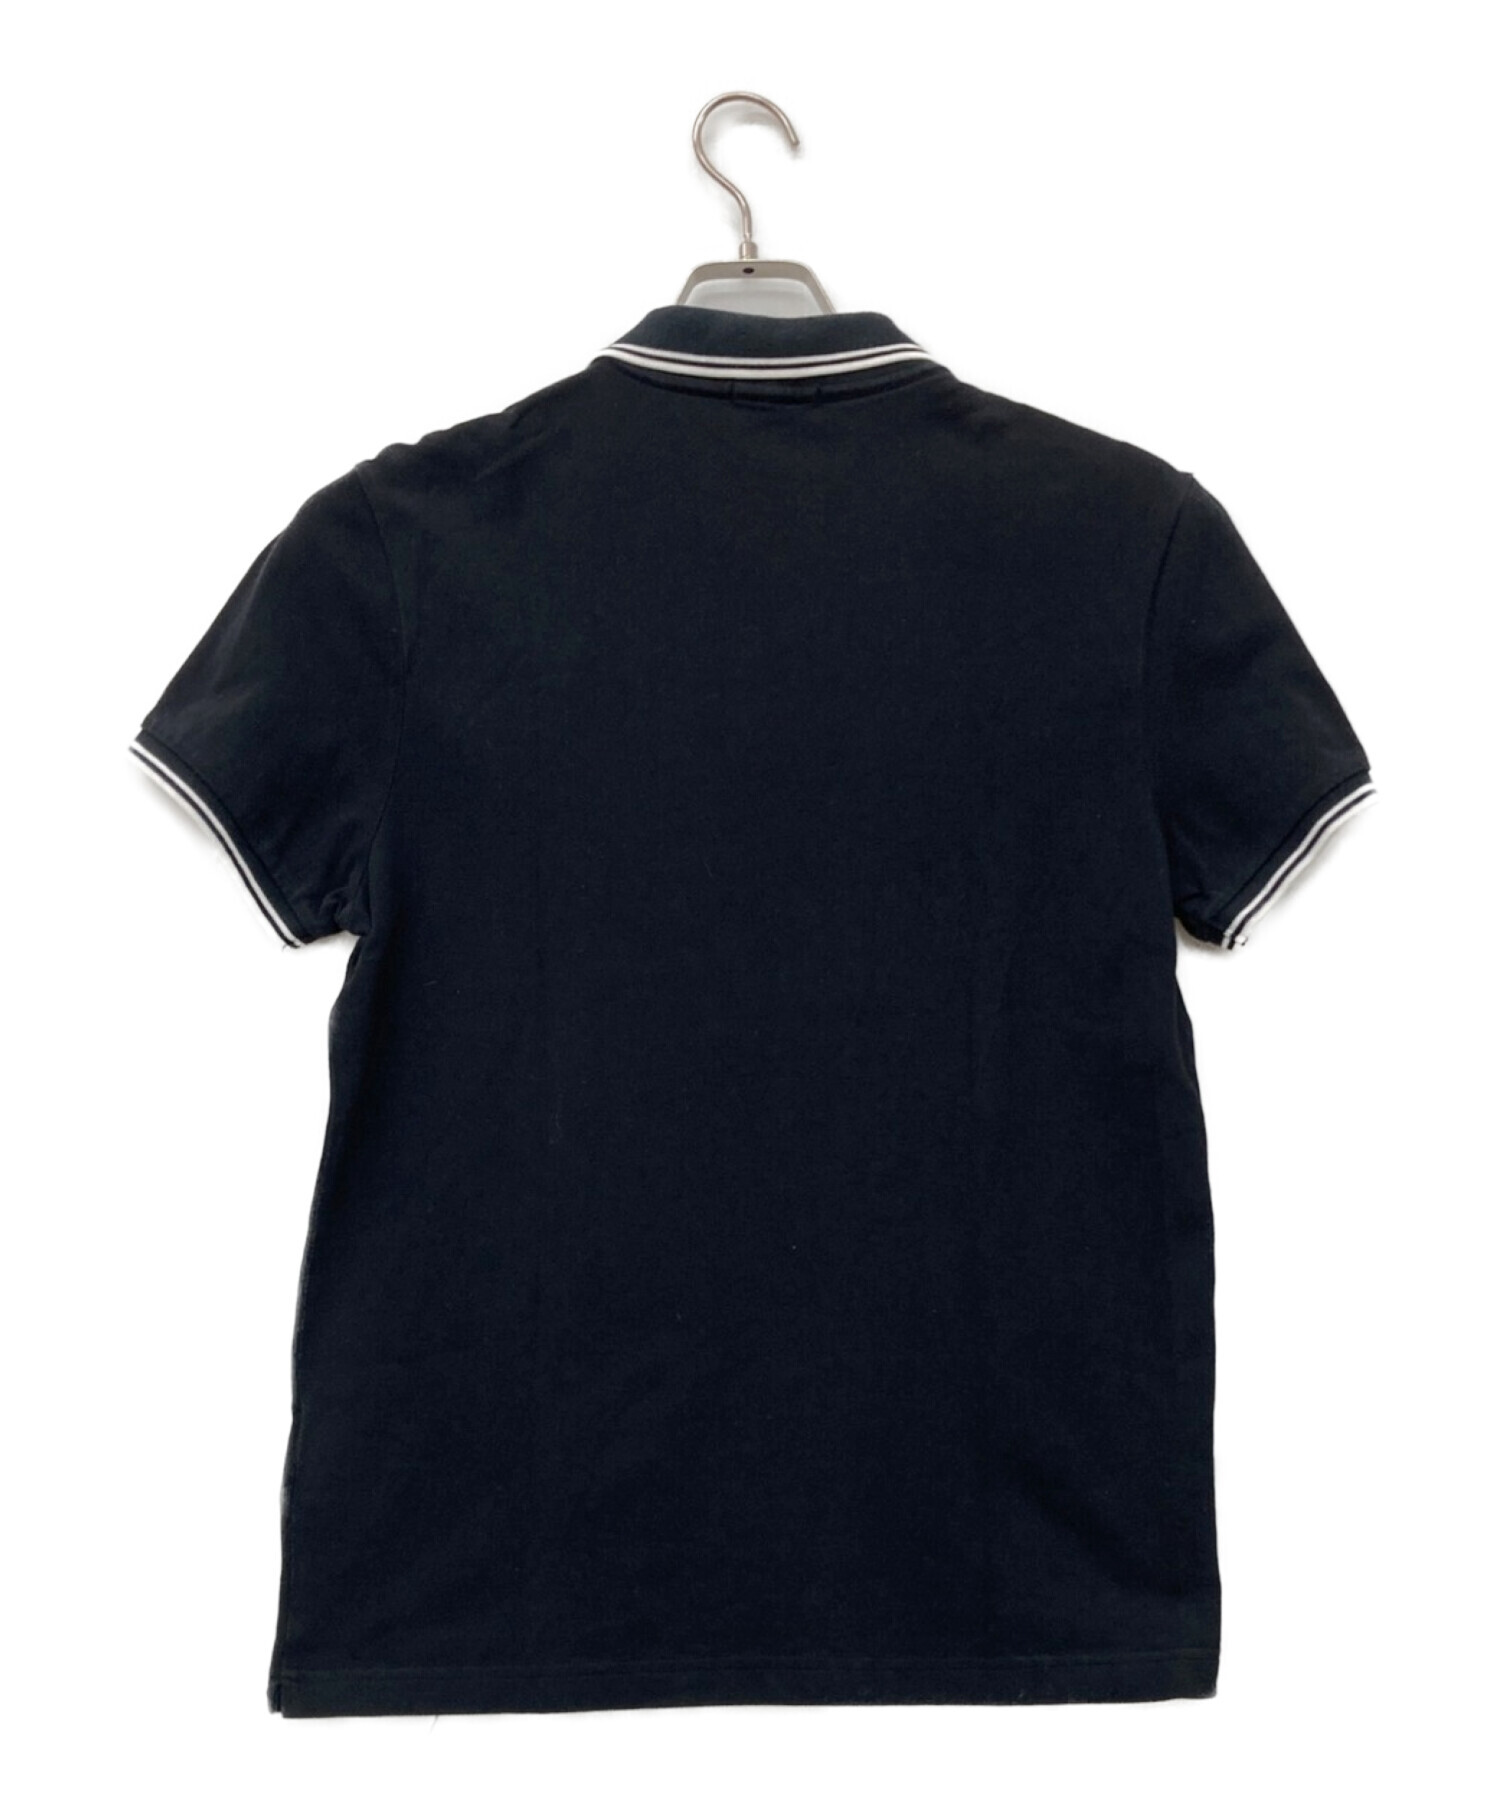 MONCLER (モンクレール) ロゴ ワンポイント ポロシャツ ブラック サイズ:M